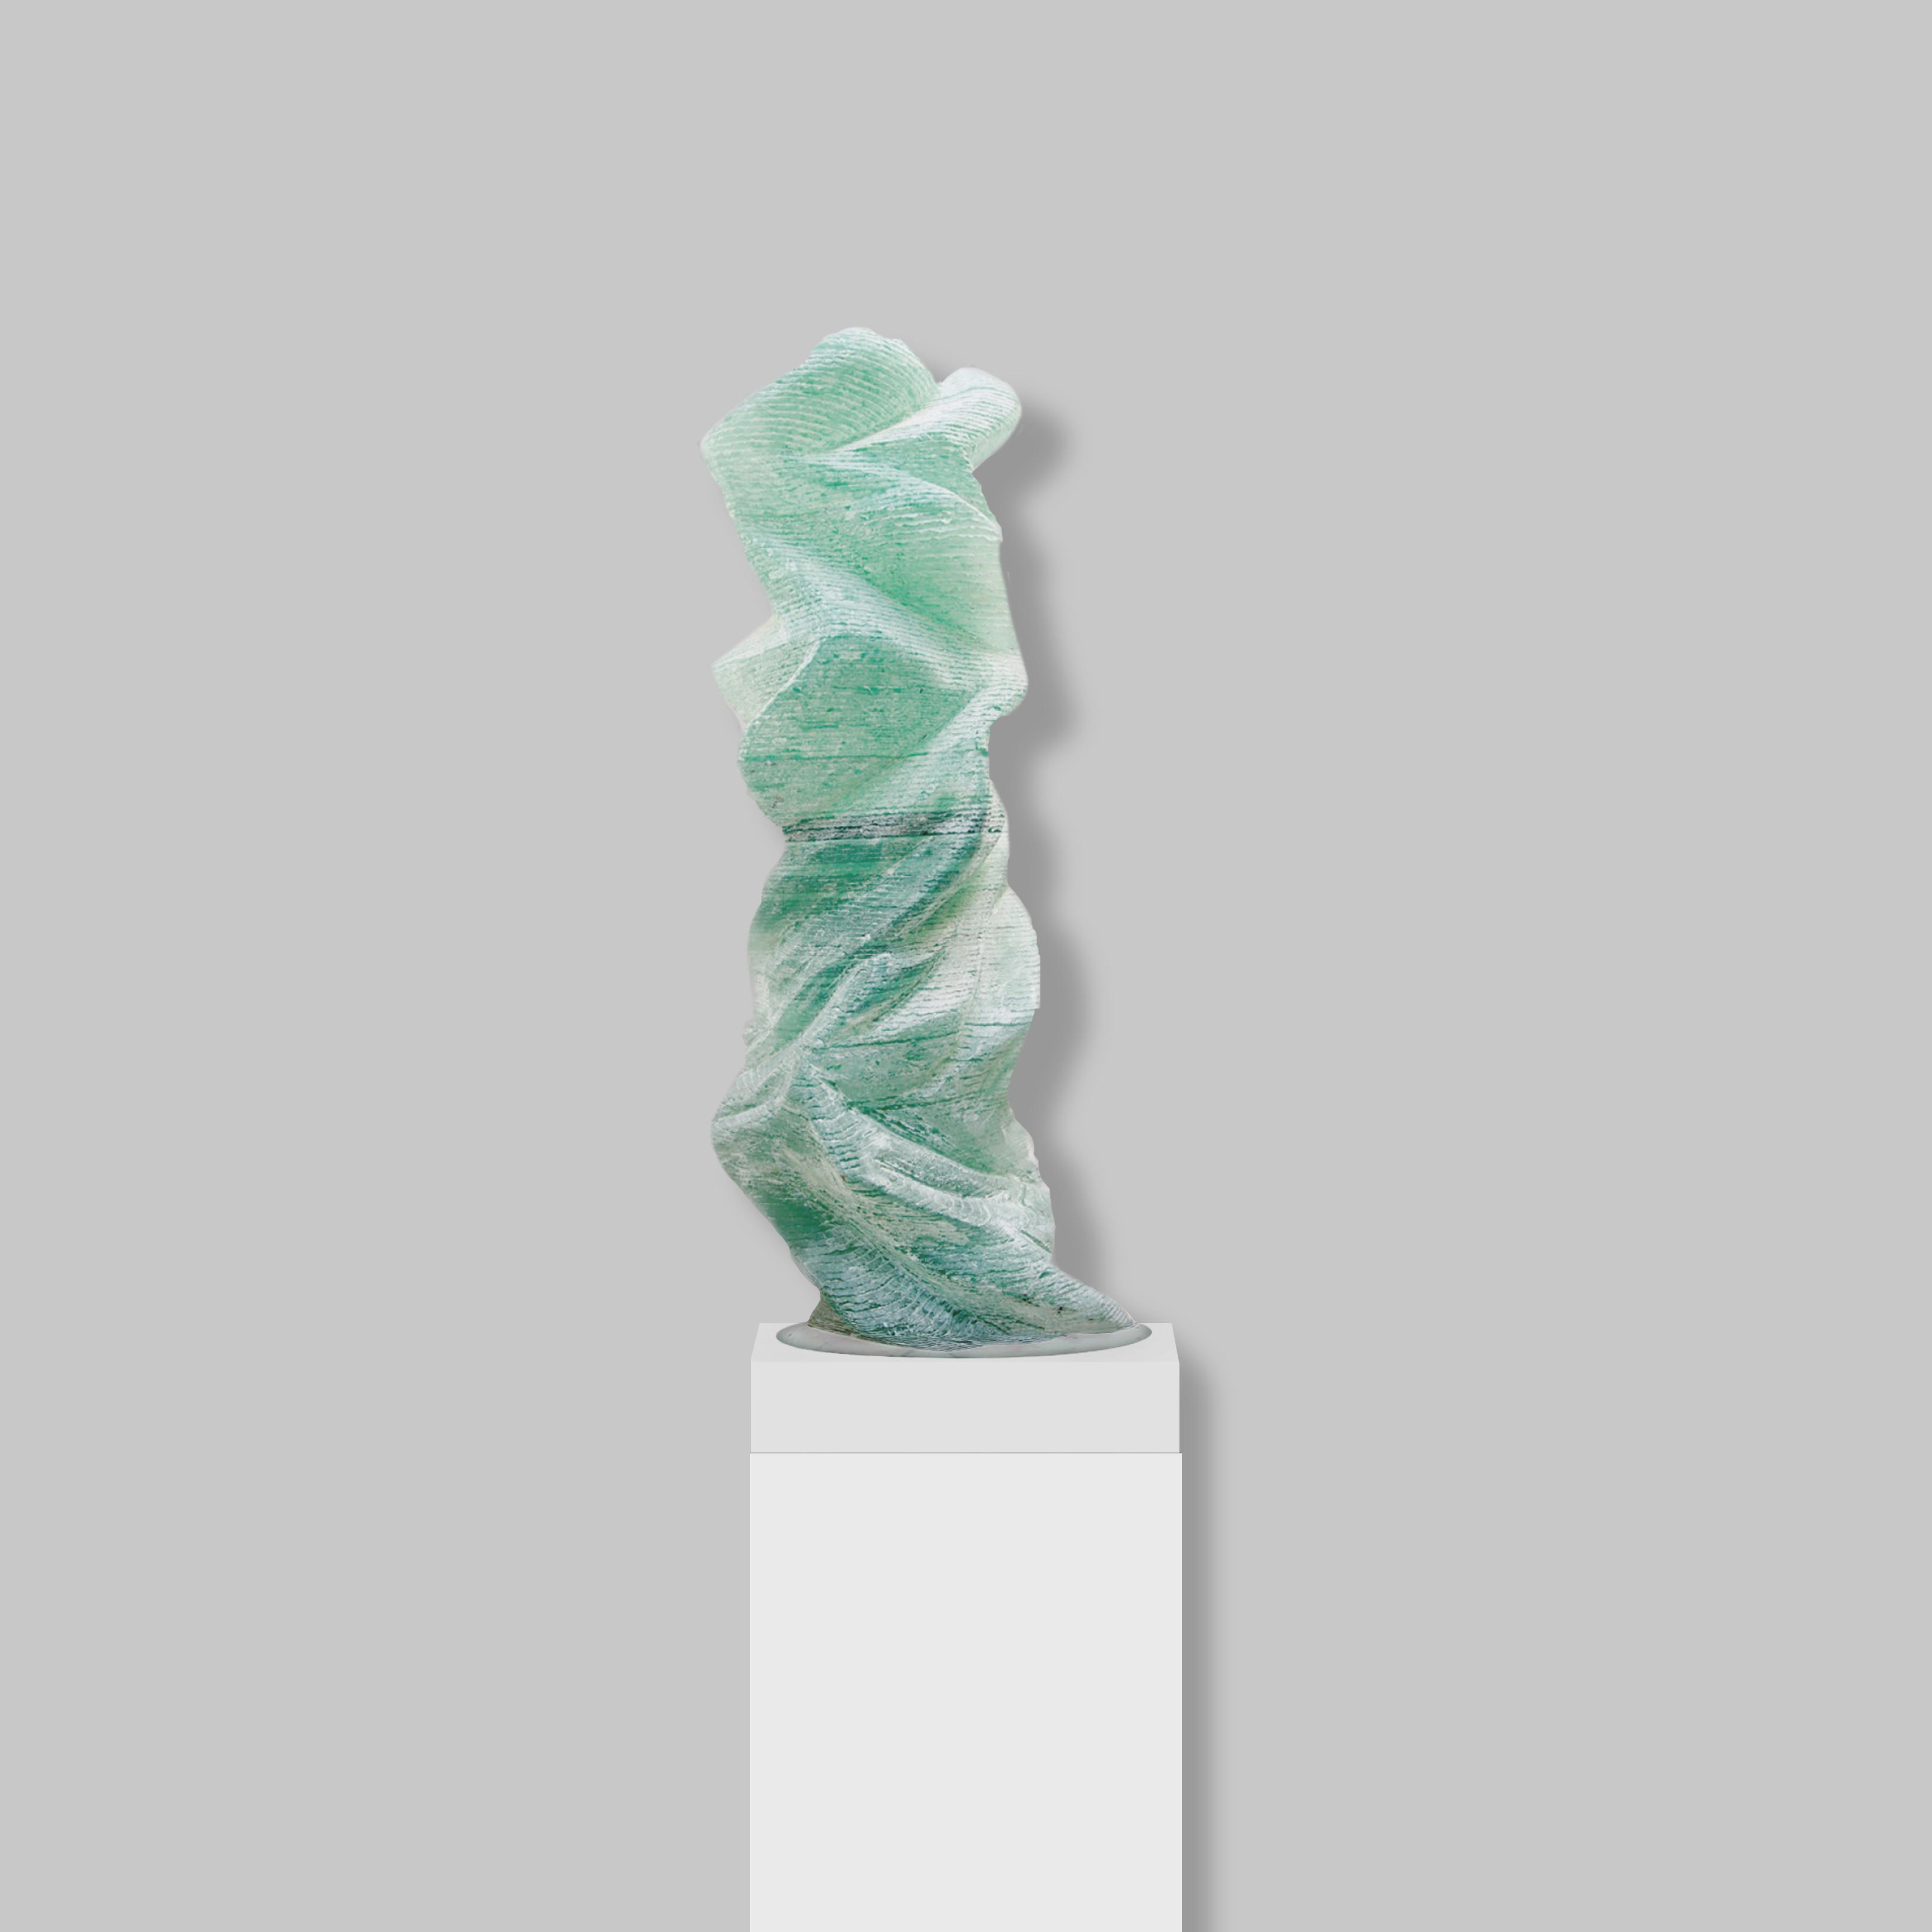 Un Elan sans fin, 2017
115 x 44 cm
Sculpture en verre